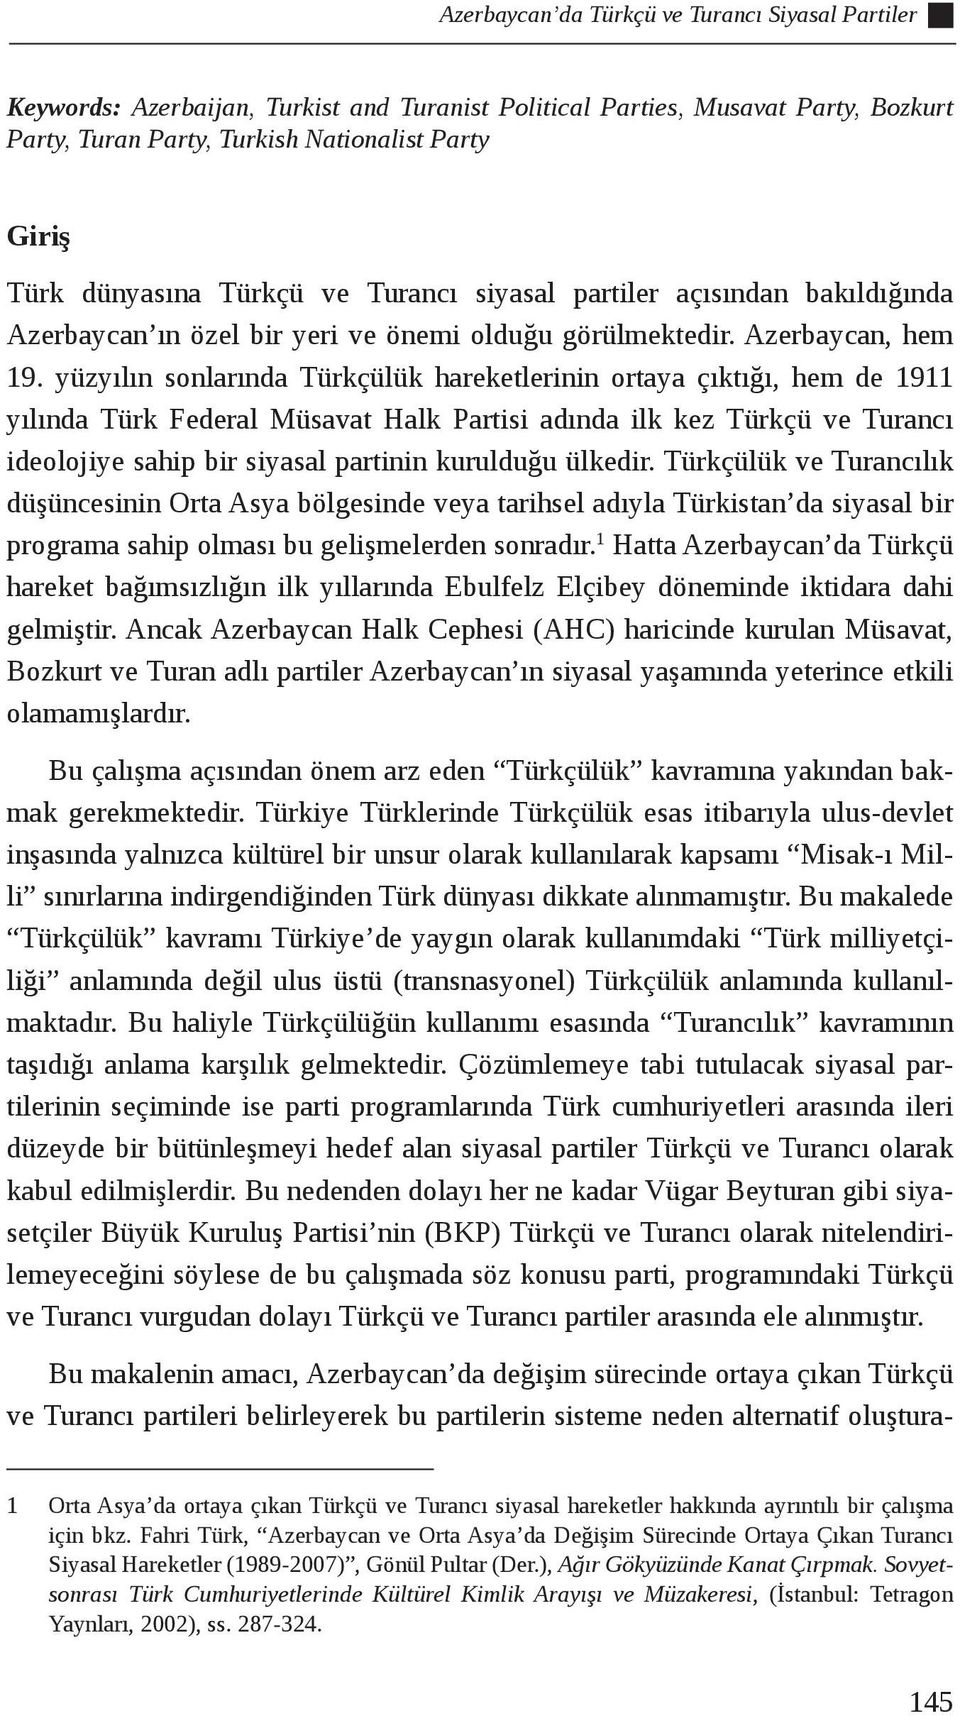 yüzyılın sonlarında Türkçülük hareketlerinin ortaya çıktığı, hem de 1911 yılında Türk Federal Müsavat Halk Partisi adında ilk kez Türkçü ve Turancı ideolojiye sahip bir siyasal partinin kurulduğu